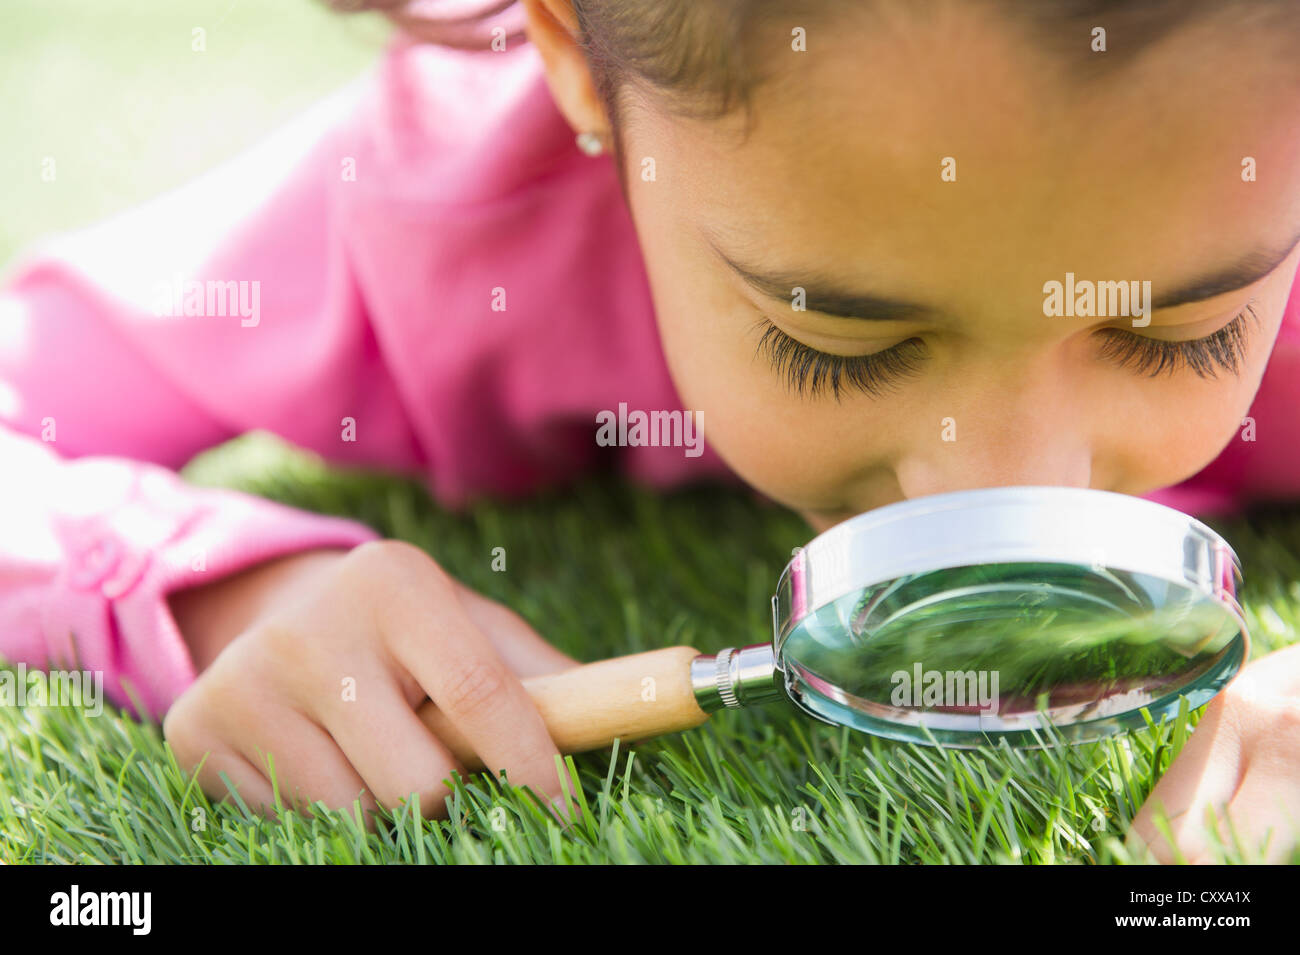 Razza mista ragazza guardando l'erba con lente di ingrandimento Foto Stock